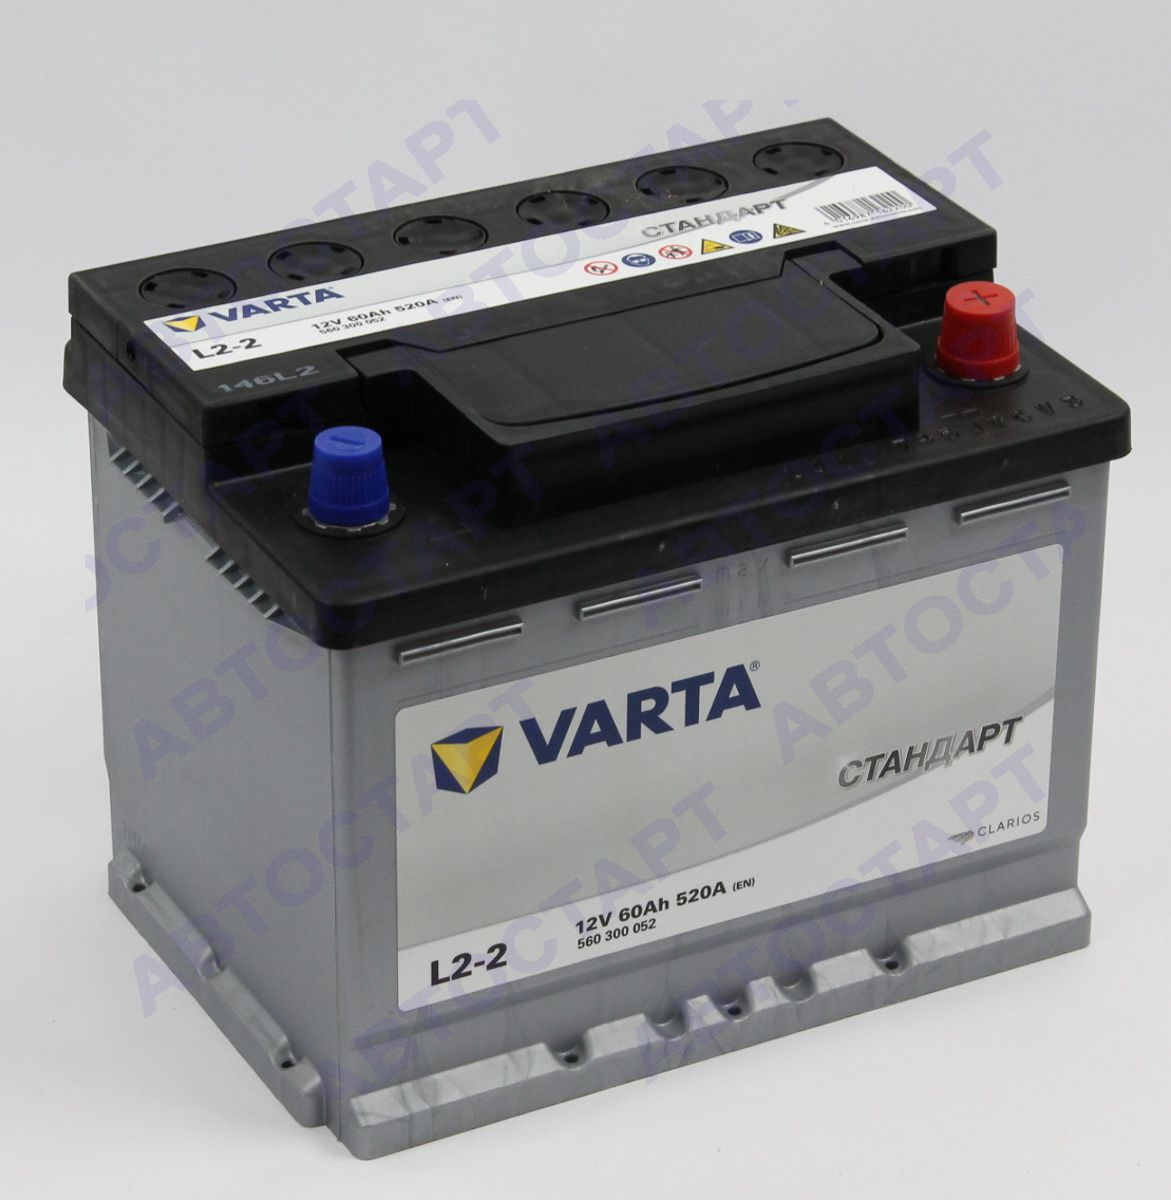 Аккумулятор VST 60 о.п. Стандарт 560 300 054 (Varta)